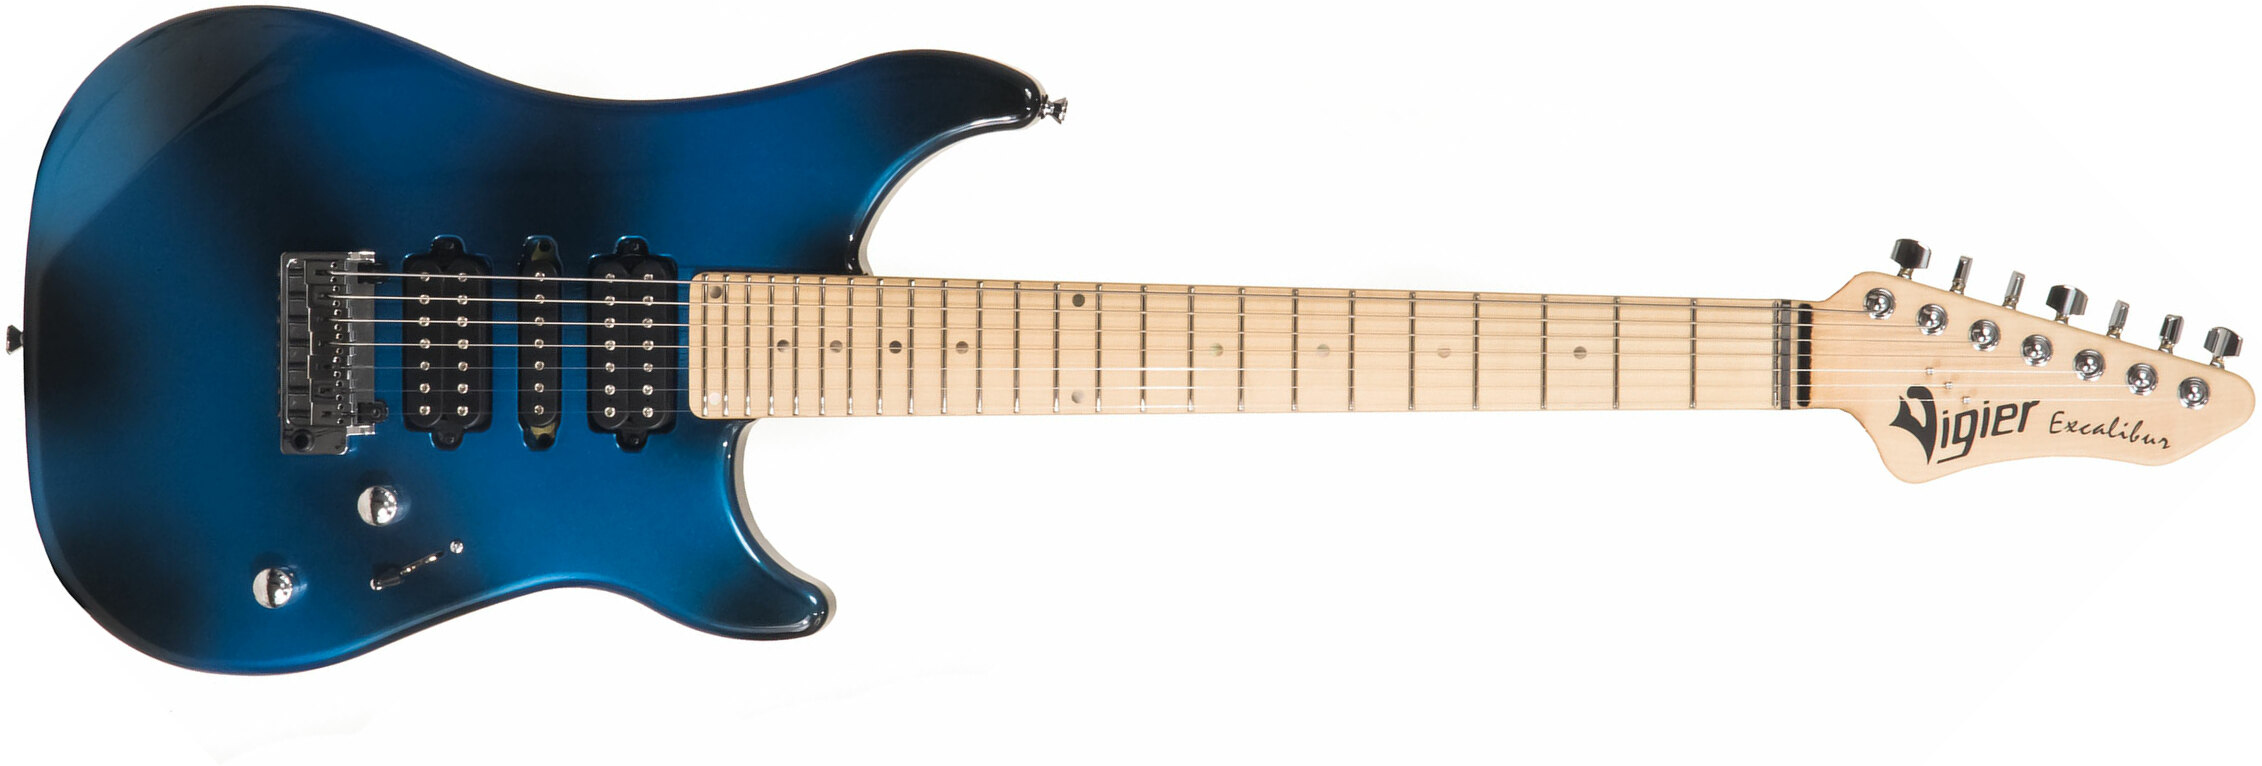 Vigier Excalibur Supra 7c Hsh Trem Mn - Urban Blue - 7-snarige elektrische gitaar - Main picture